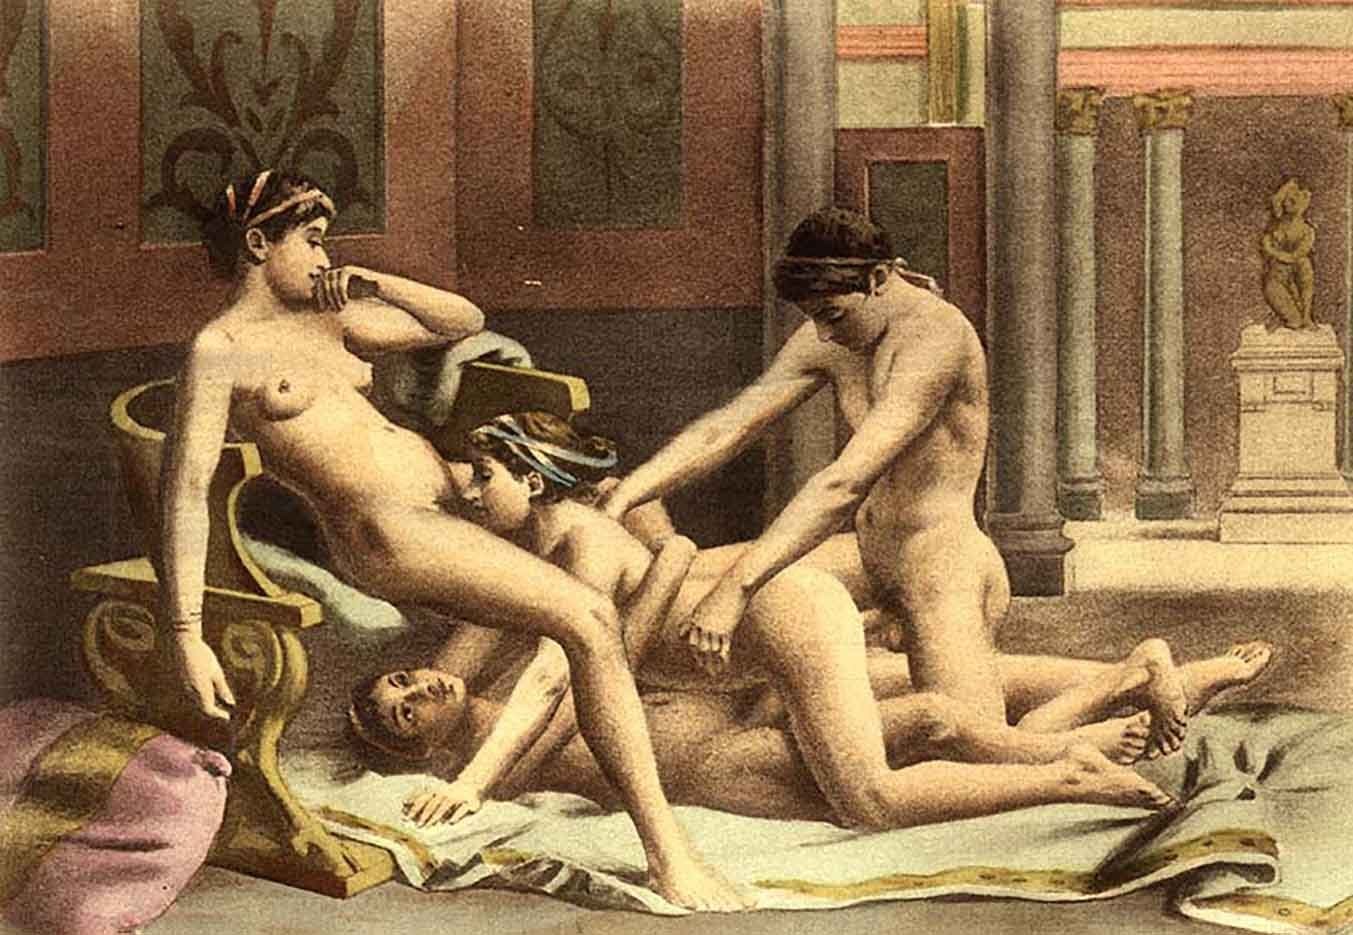 Бесплатное Порно Видео Секс В Древней Руси